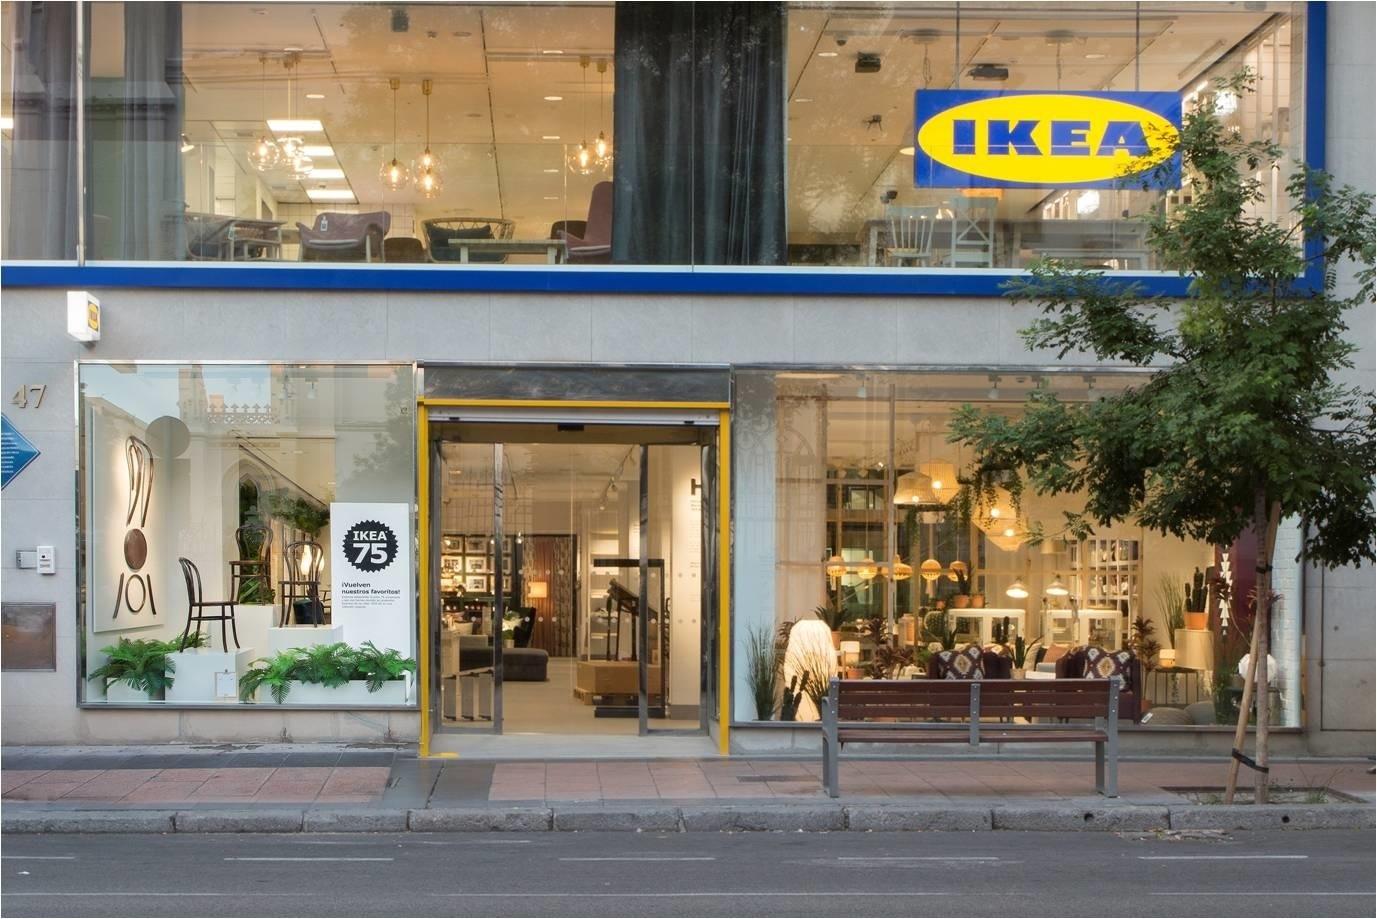 La tienda de Ikea en la calle Goya (Madrid). Fuente: Europa Press